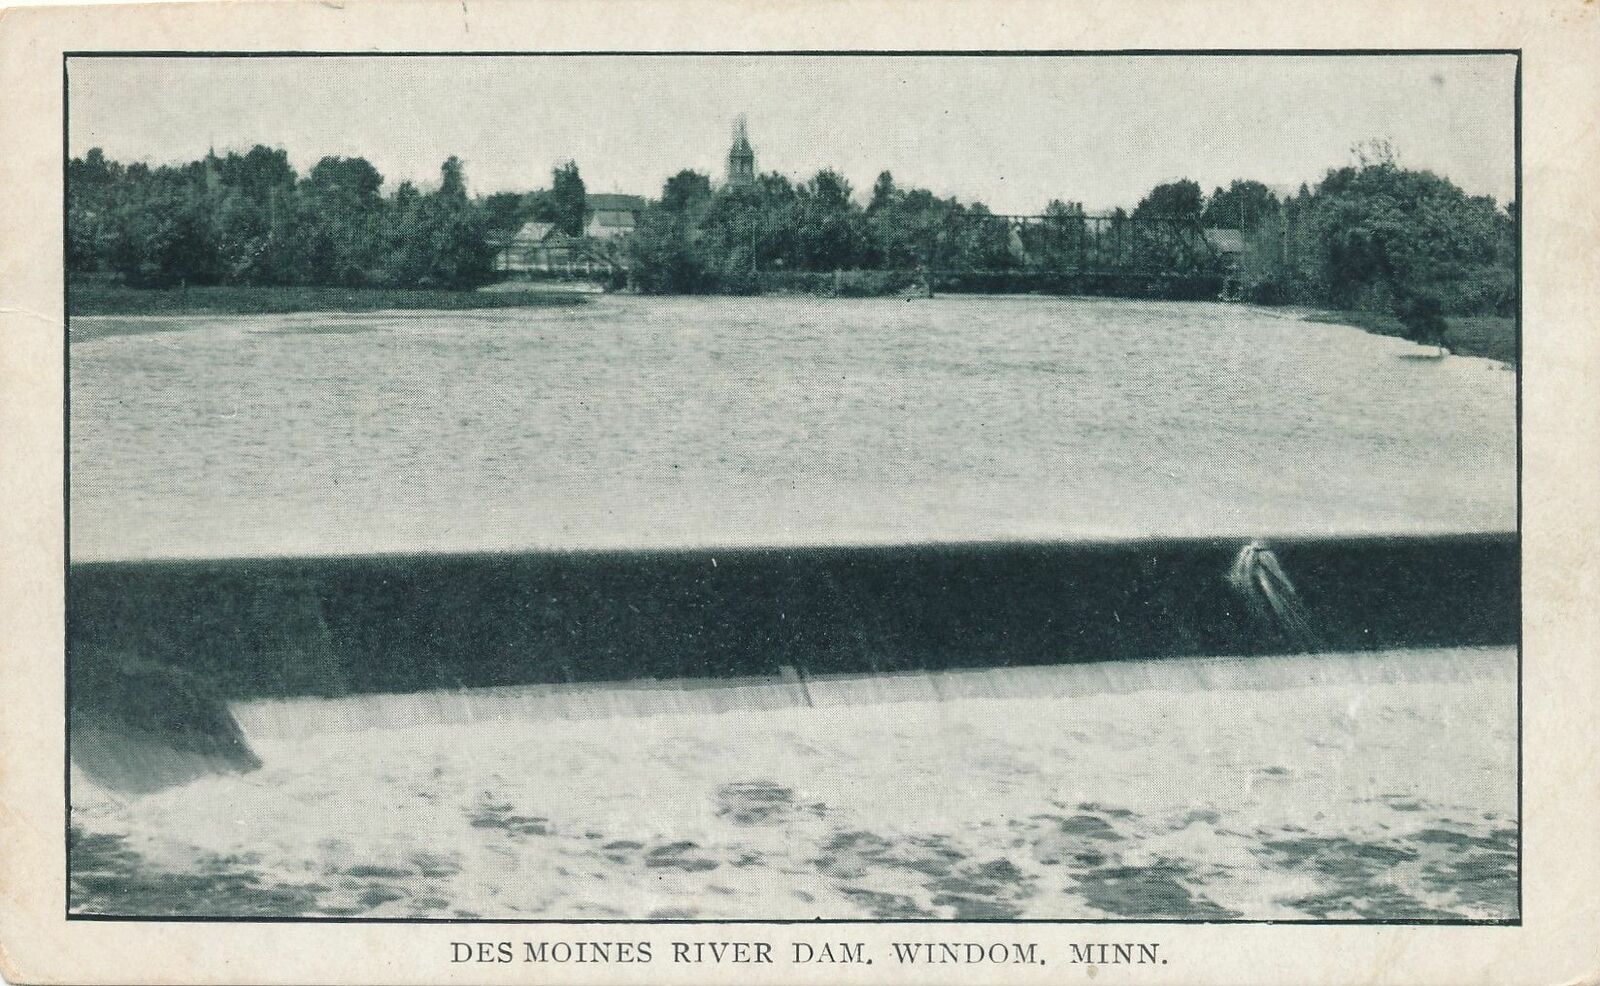 WINDOM MN - Des Moines River Dam - udb (pre 1908)